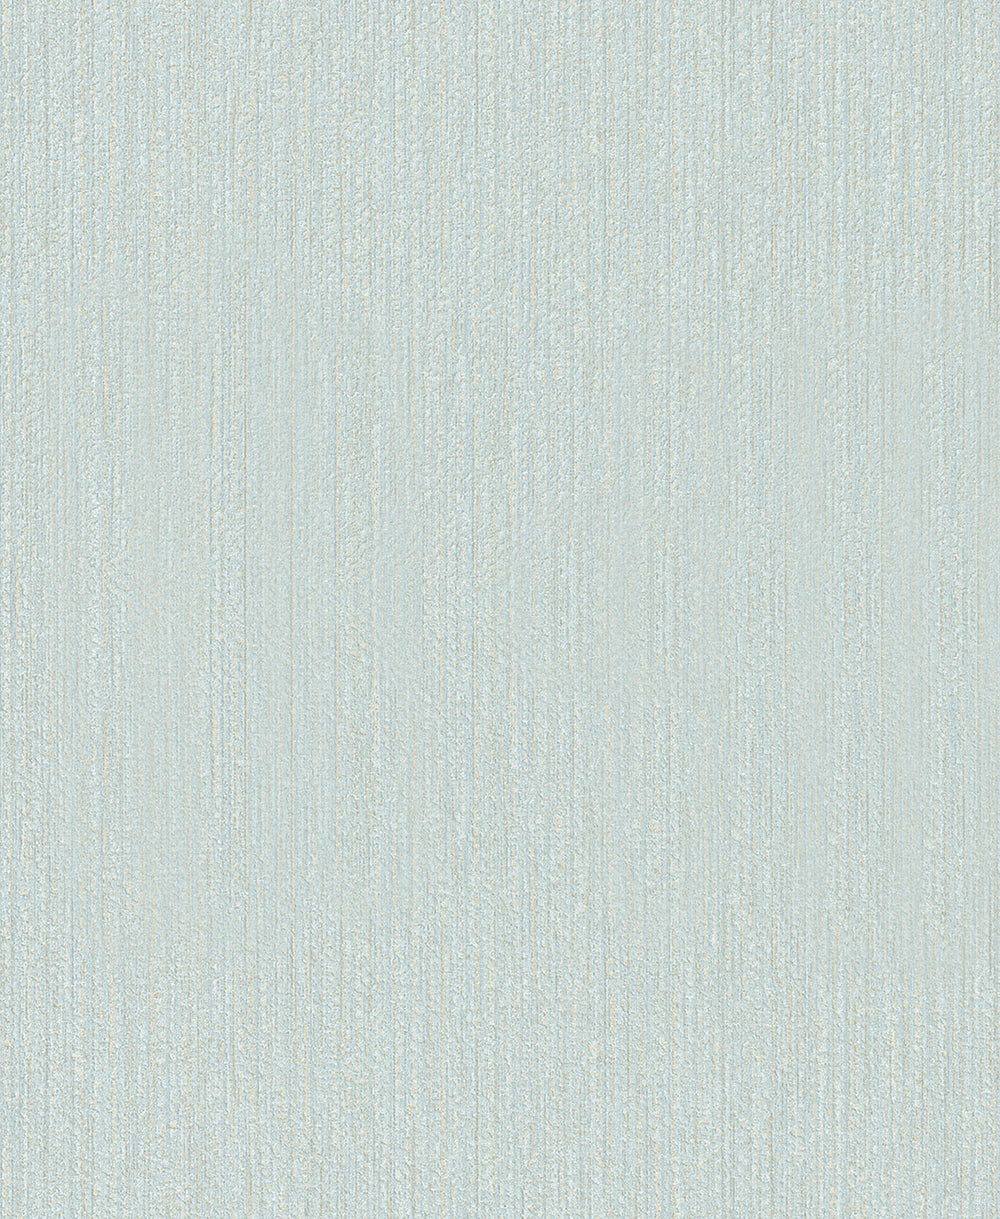 Schoner Wohnen New Spirit - Ambient bamboo weave plain wallpaper Marburg Roll Blue  32737